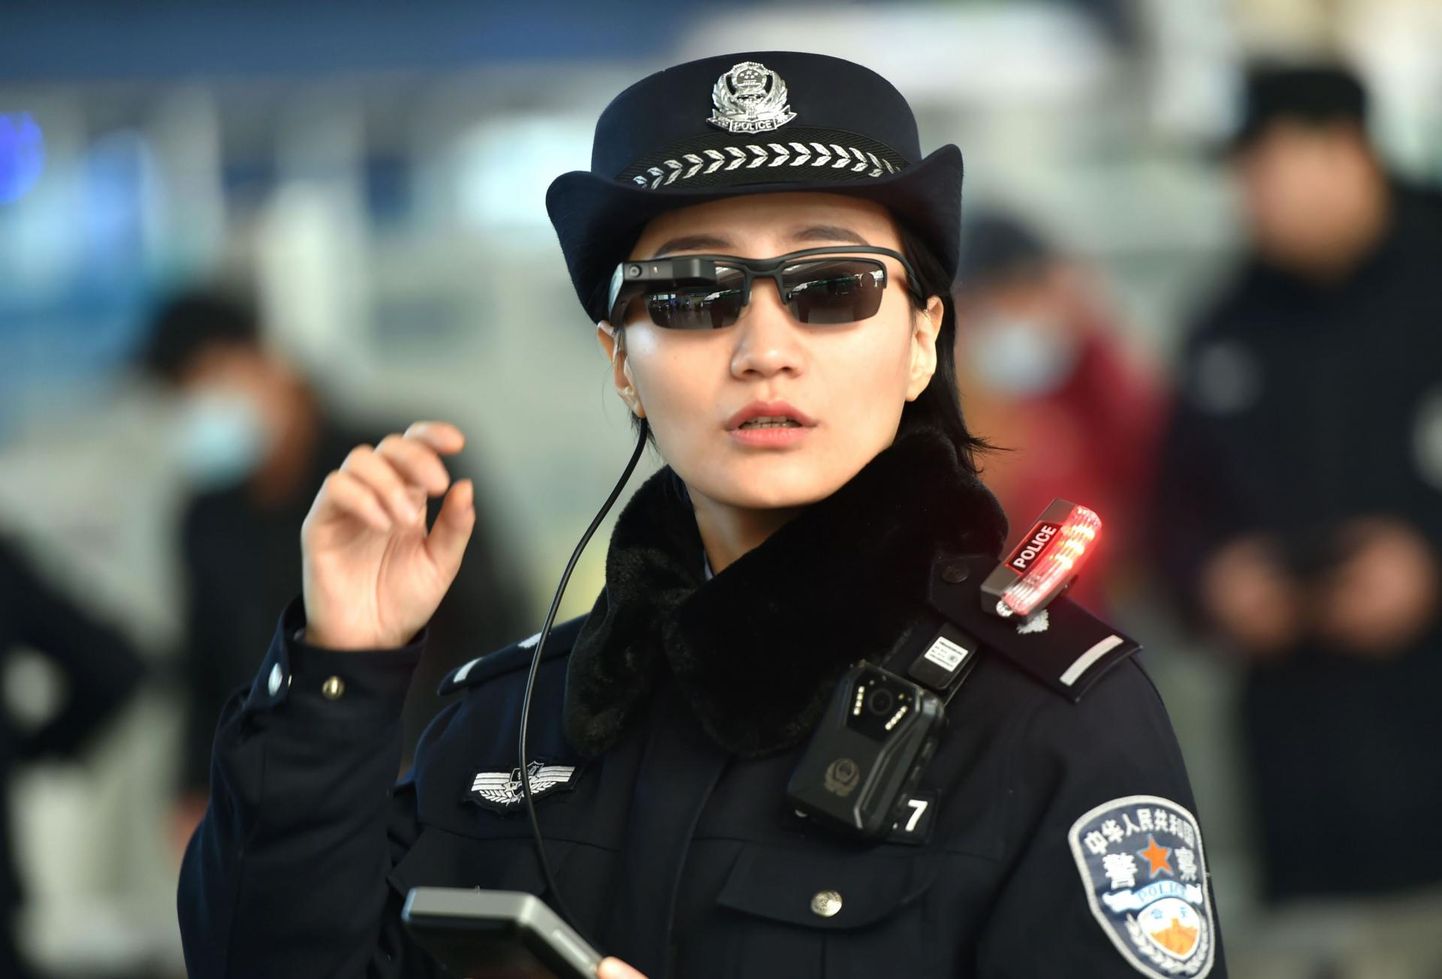 Hiina politseinik näotuvastust võimaldavate nutiprillidega patrullimas Zhengzhou raudteejaamas Henai provintsis Hiinas. Uuendus on tõhus tagaotsitavate tuvastamiseks, kuid on ärevaks teinud inimõigusaktiviste.  FOTO: afp / Scanpix